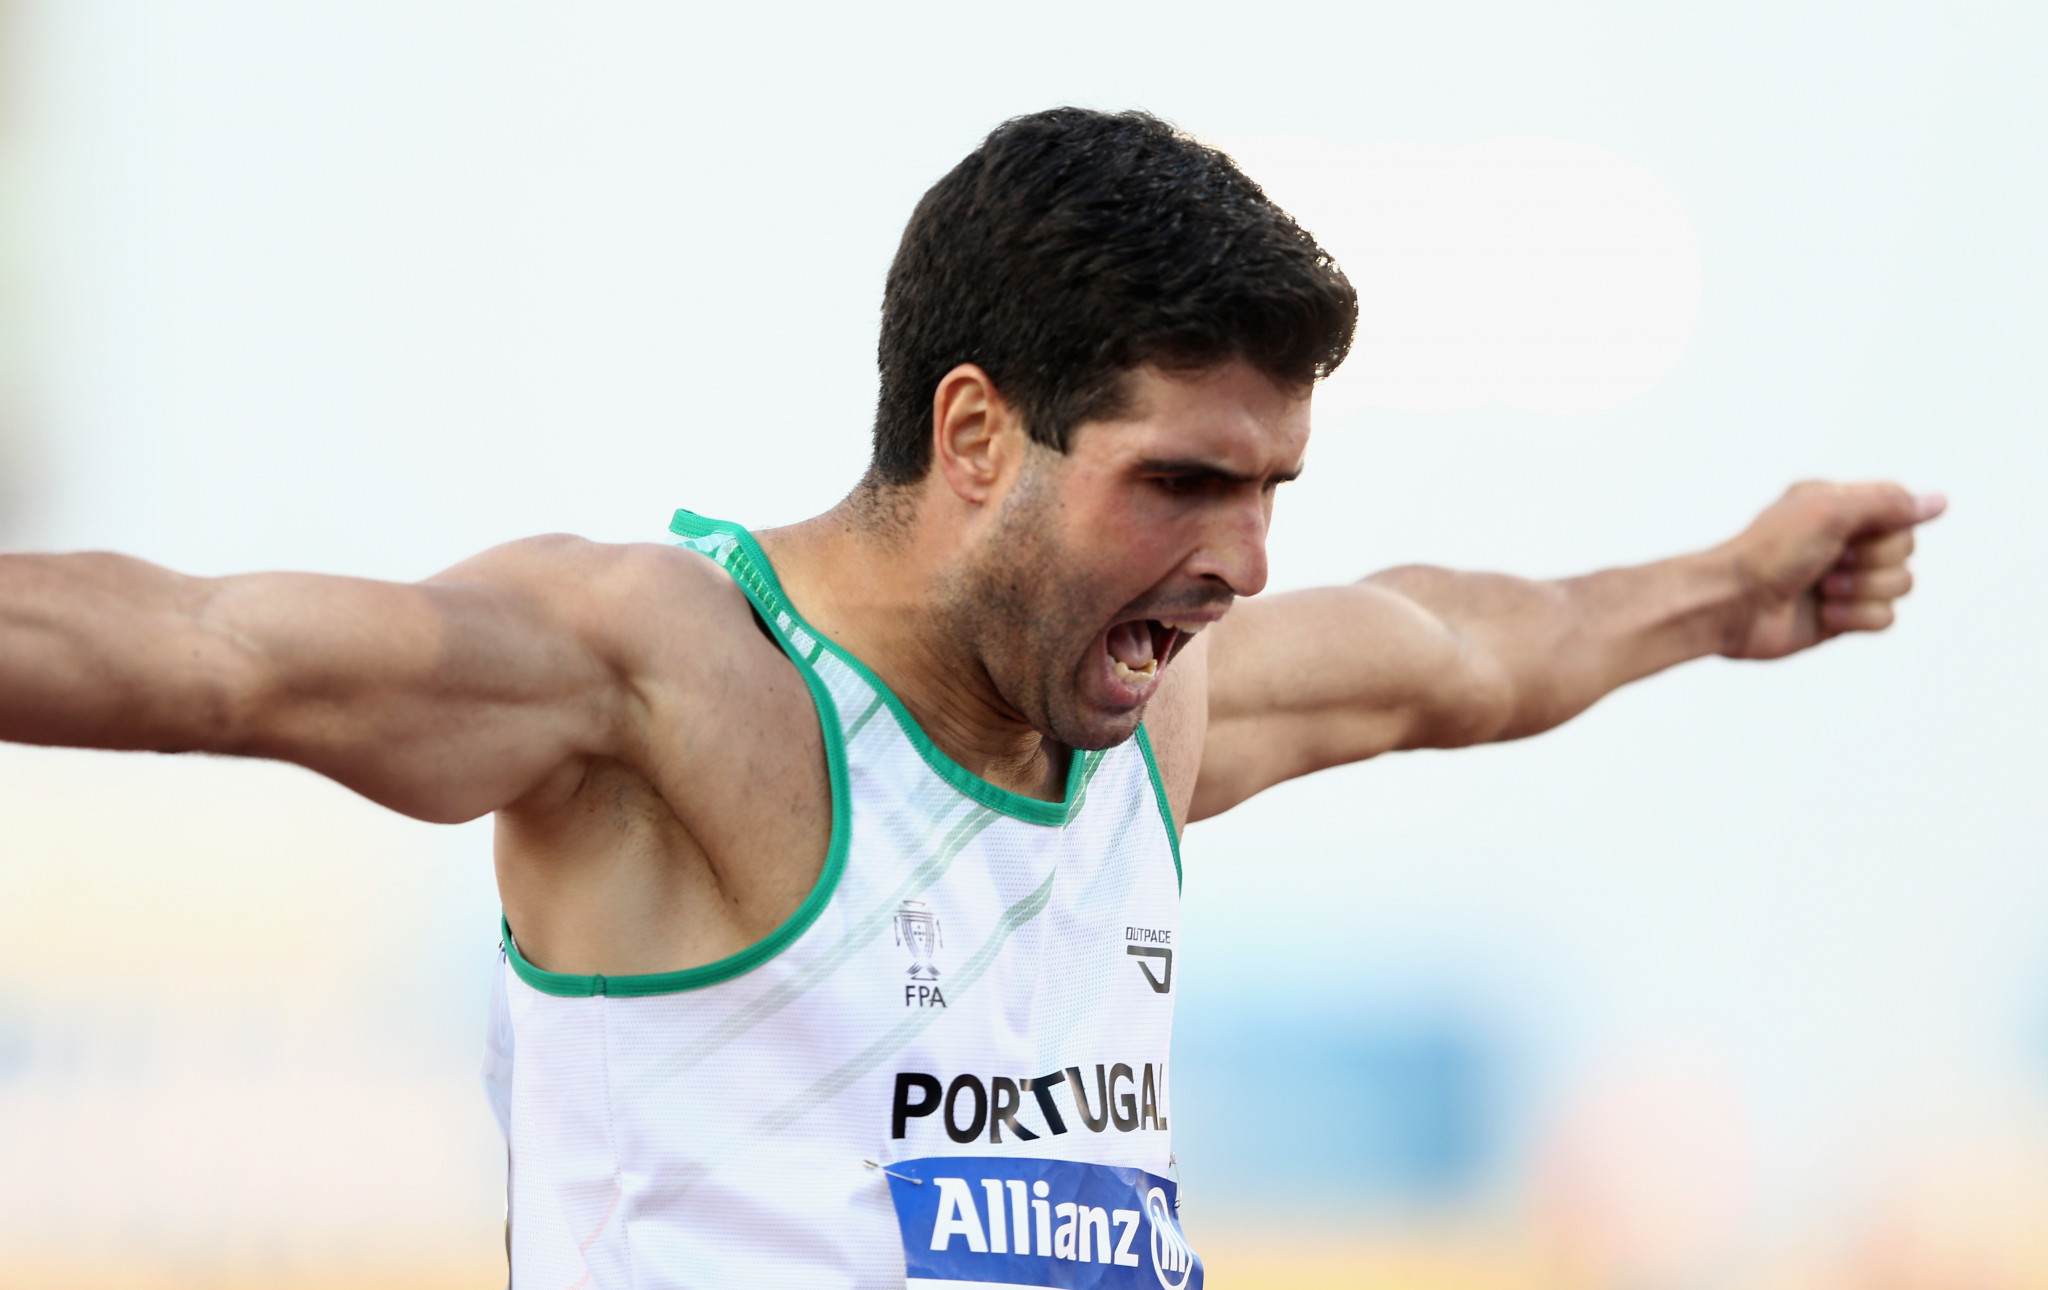 Portugal's Luis Goncalves won the men's T11/12 400m at the World Para Athletics Dubai Grand Prix ©Getty Images